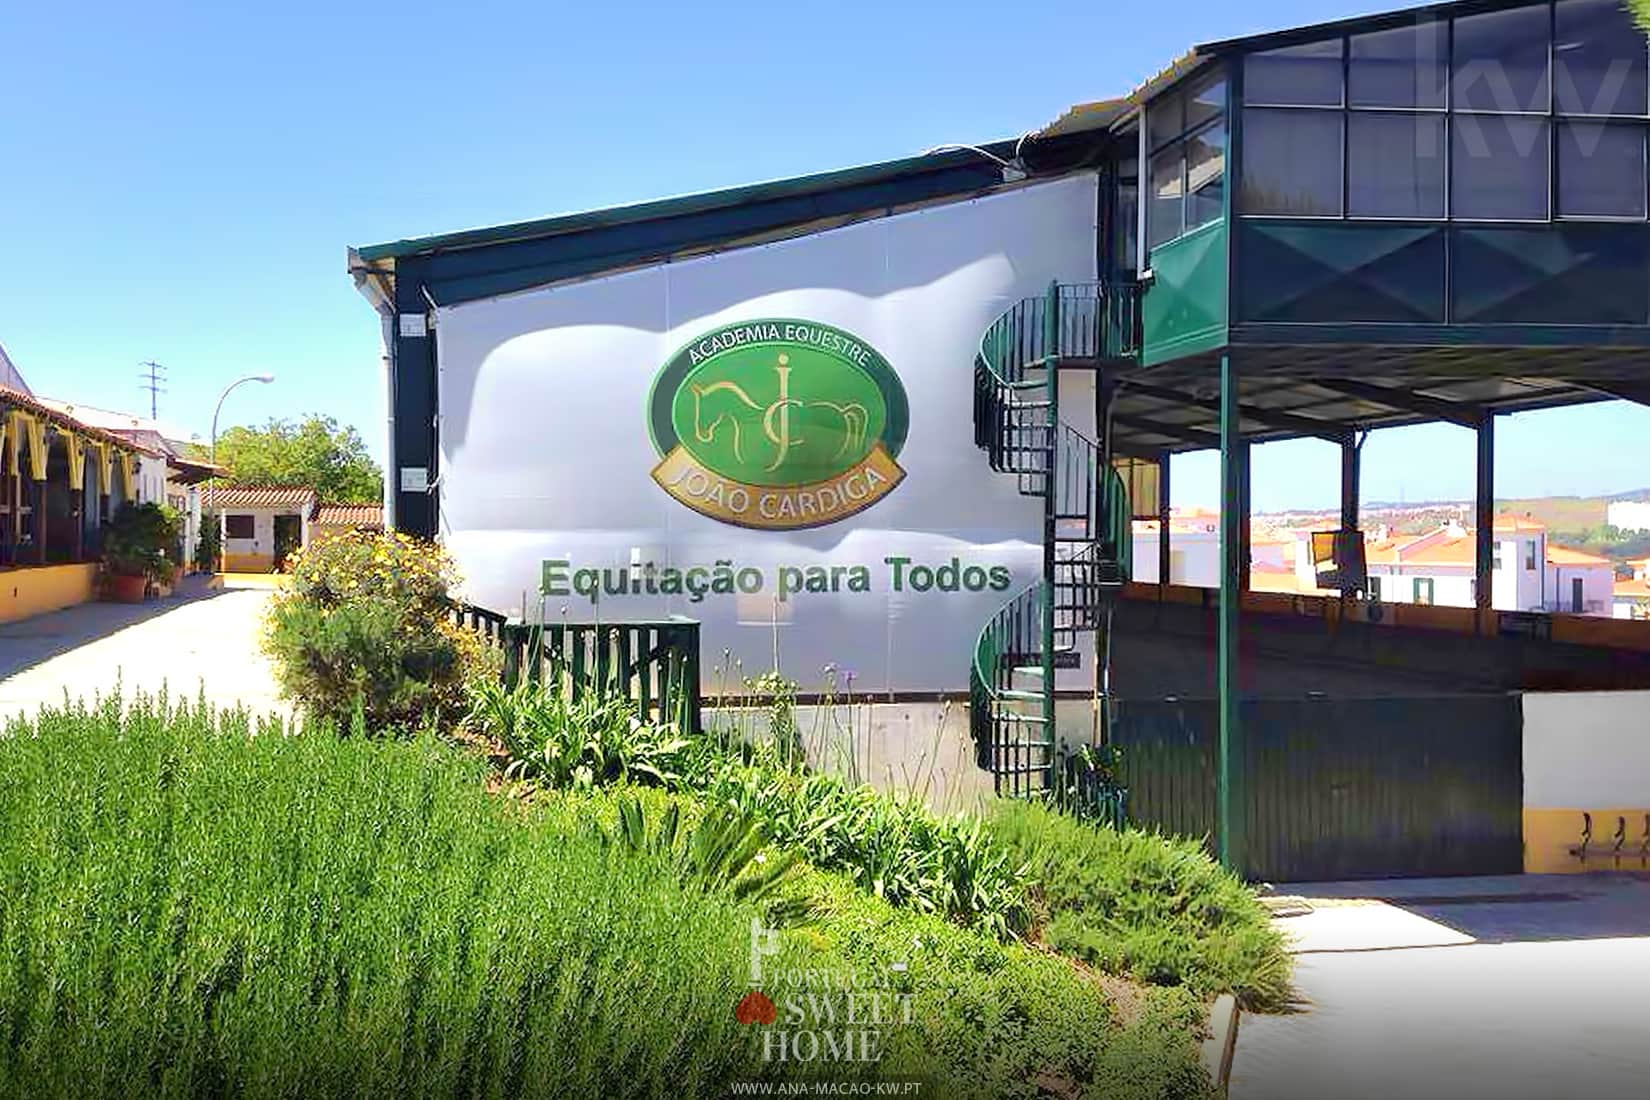 Equestrian center and João Cardiga Academy next to Oeiras Golf & Residence